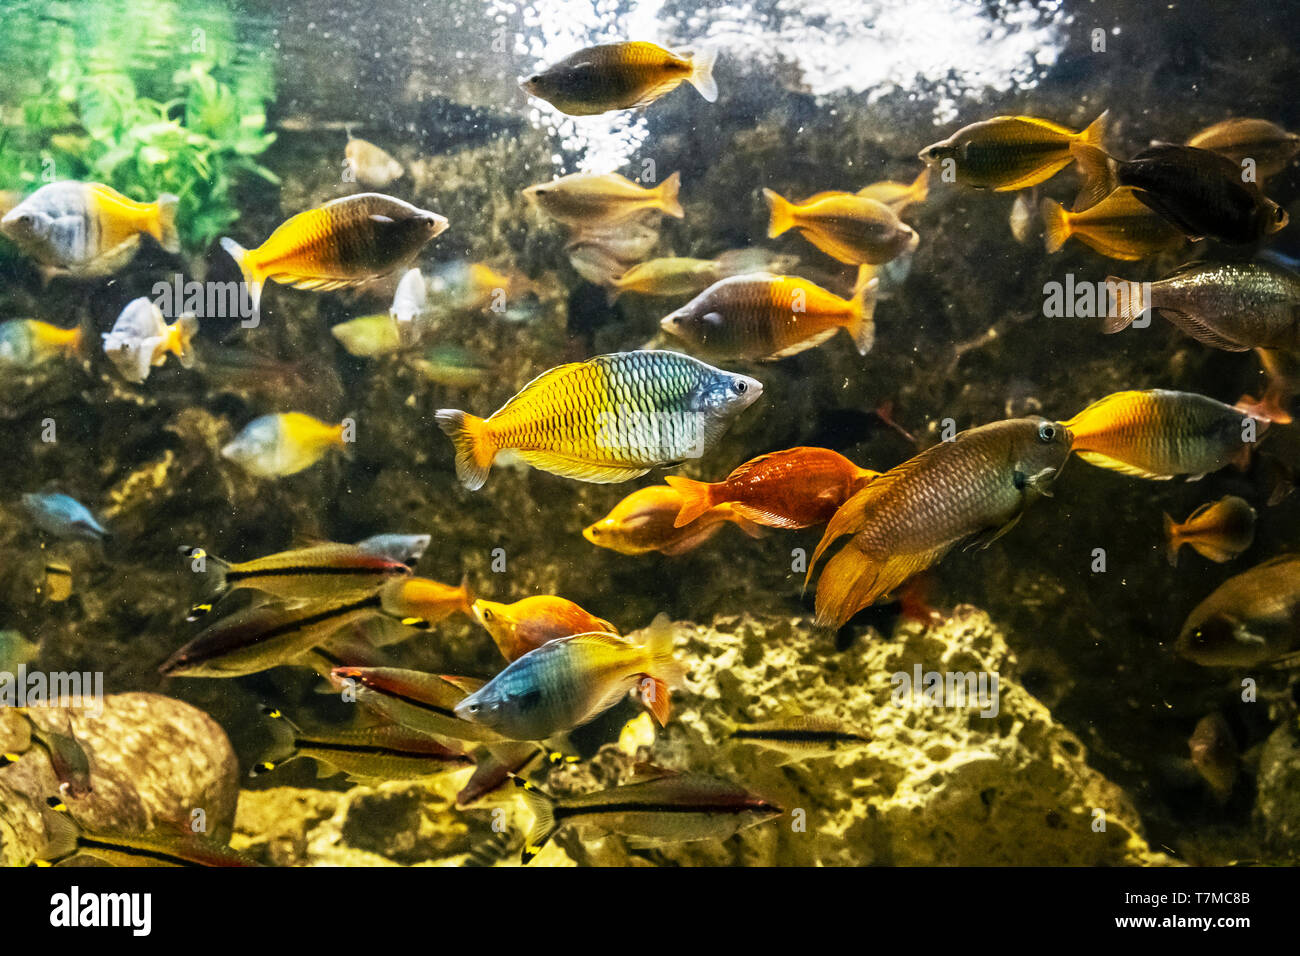 Boeseman's rainbowfish - Melanotaenia boesemani. Freshwater natural scene. Beauty in nature. Stock Photo